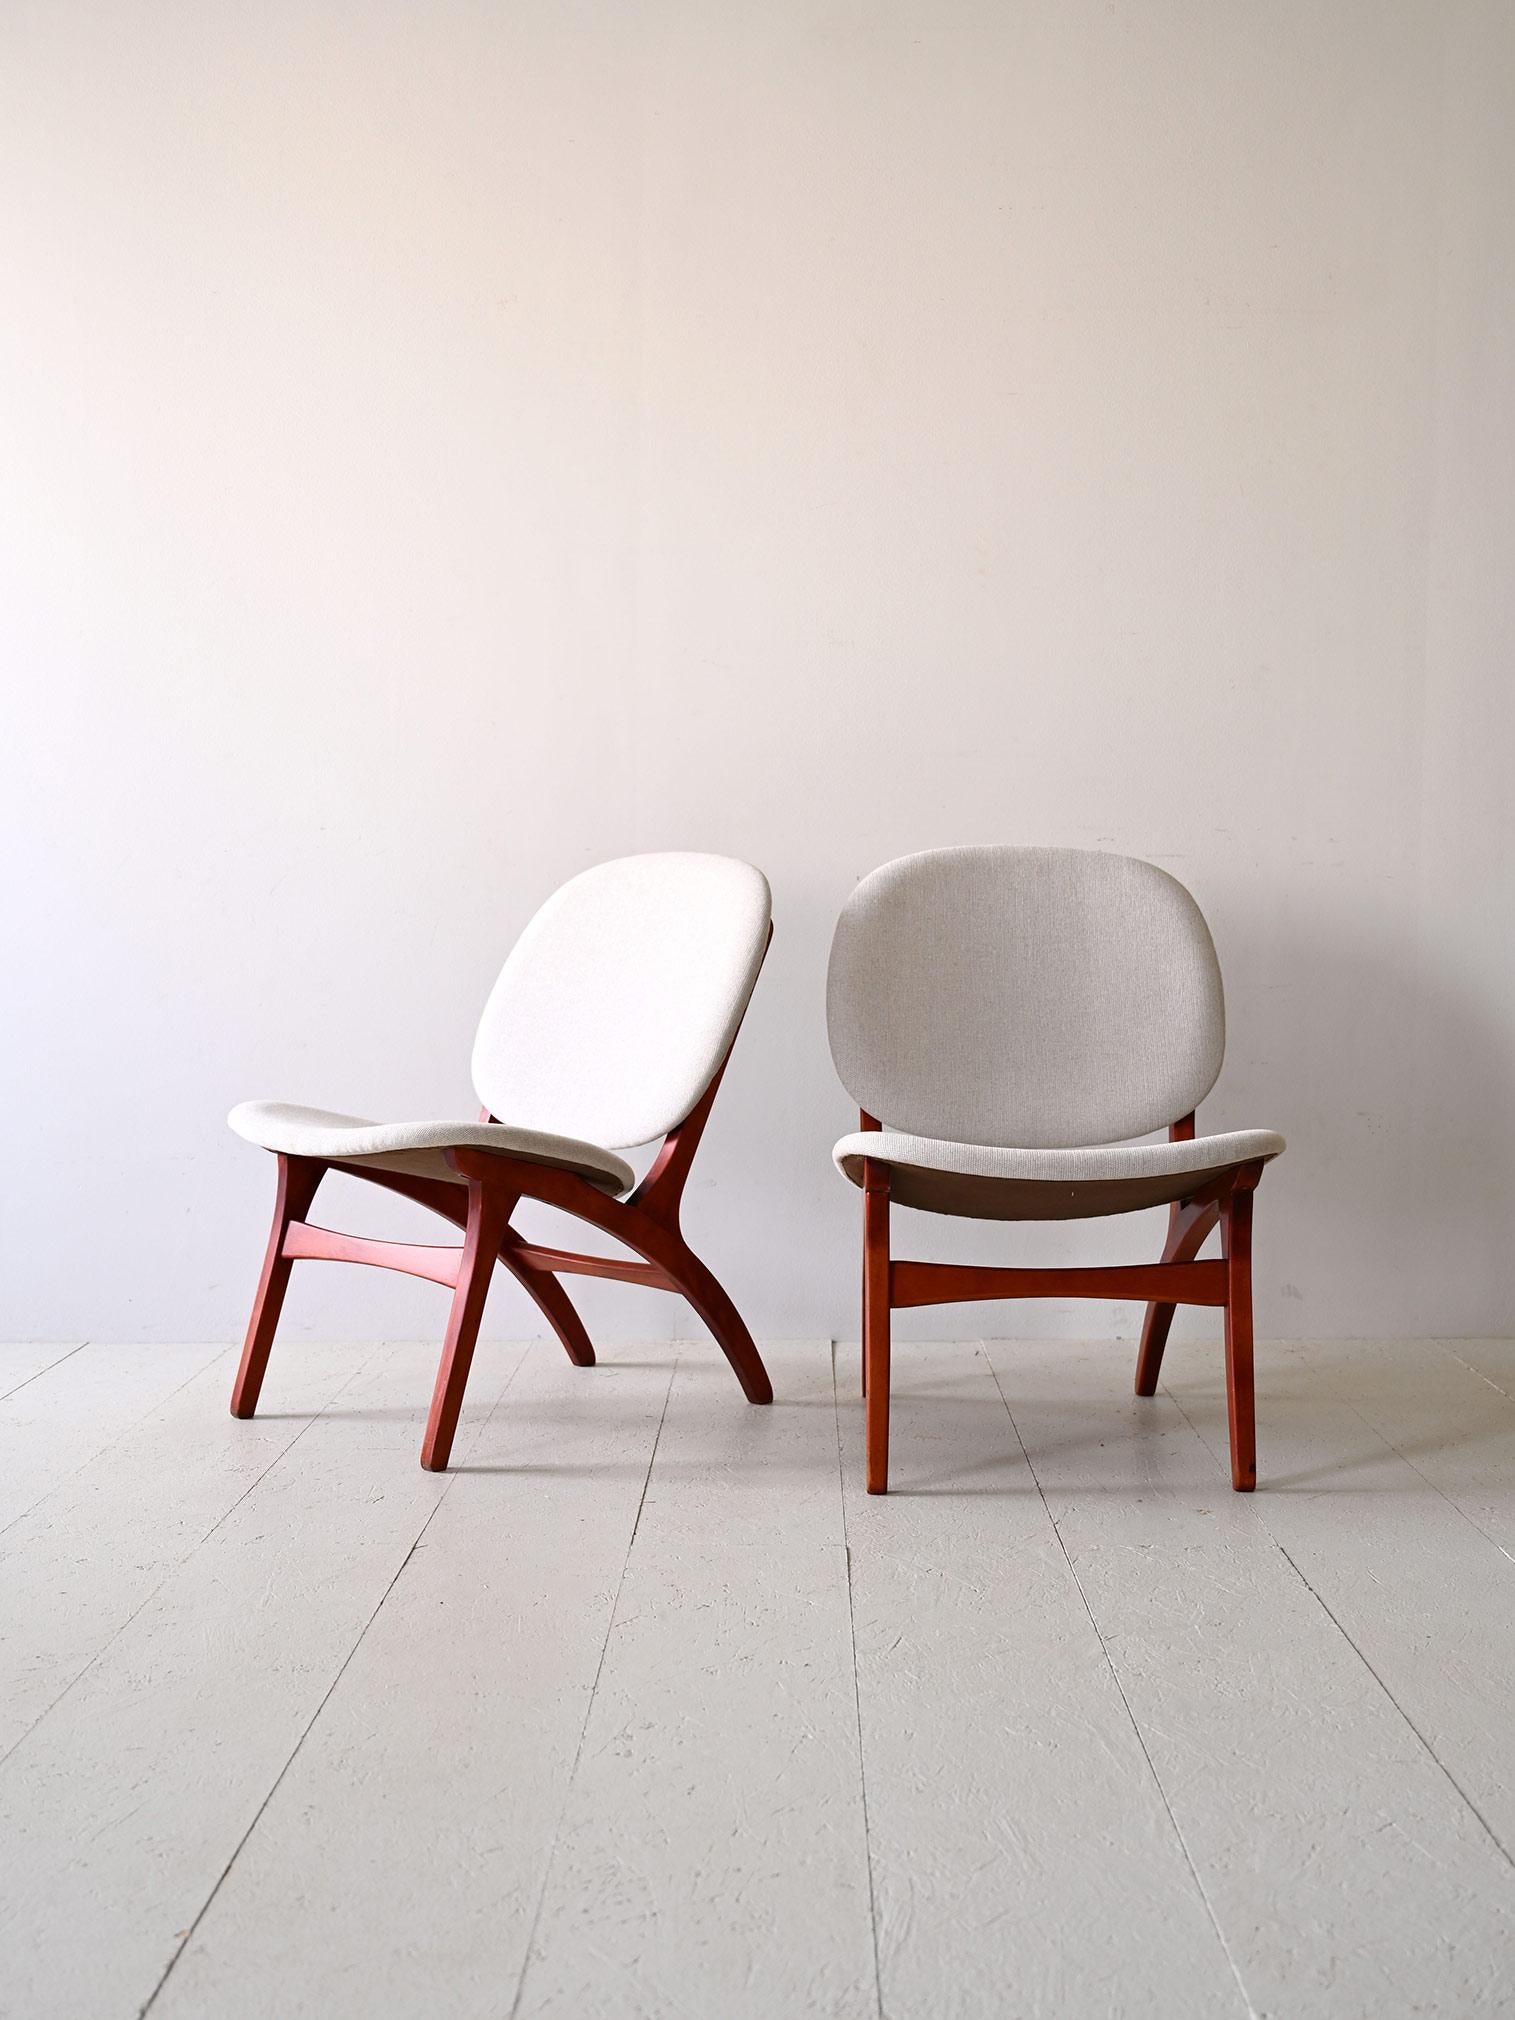 Paar nordische Sessel mit weißem Stoff  entworfen von Carl Edward Matthes in den 1950er Jahren.

Ein Sesselpaar von zeitloser Eleganz, das sich durch eine raffinierte Kombination von Farben auszeichnet. Der weiße Stoff der Sitzfläche bildet einen